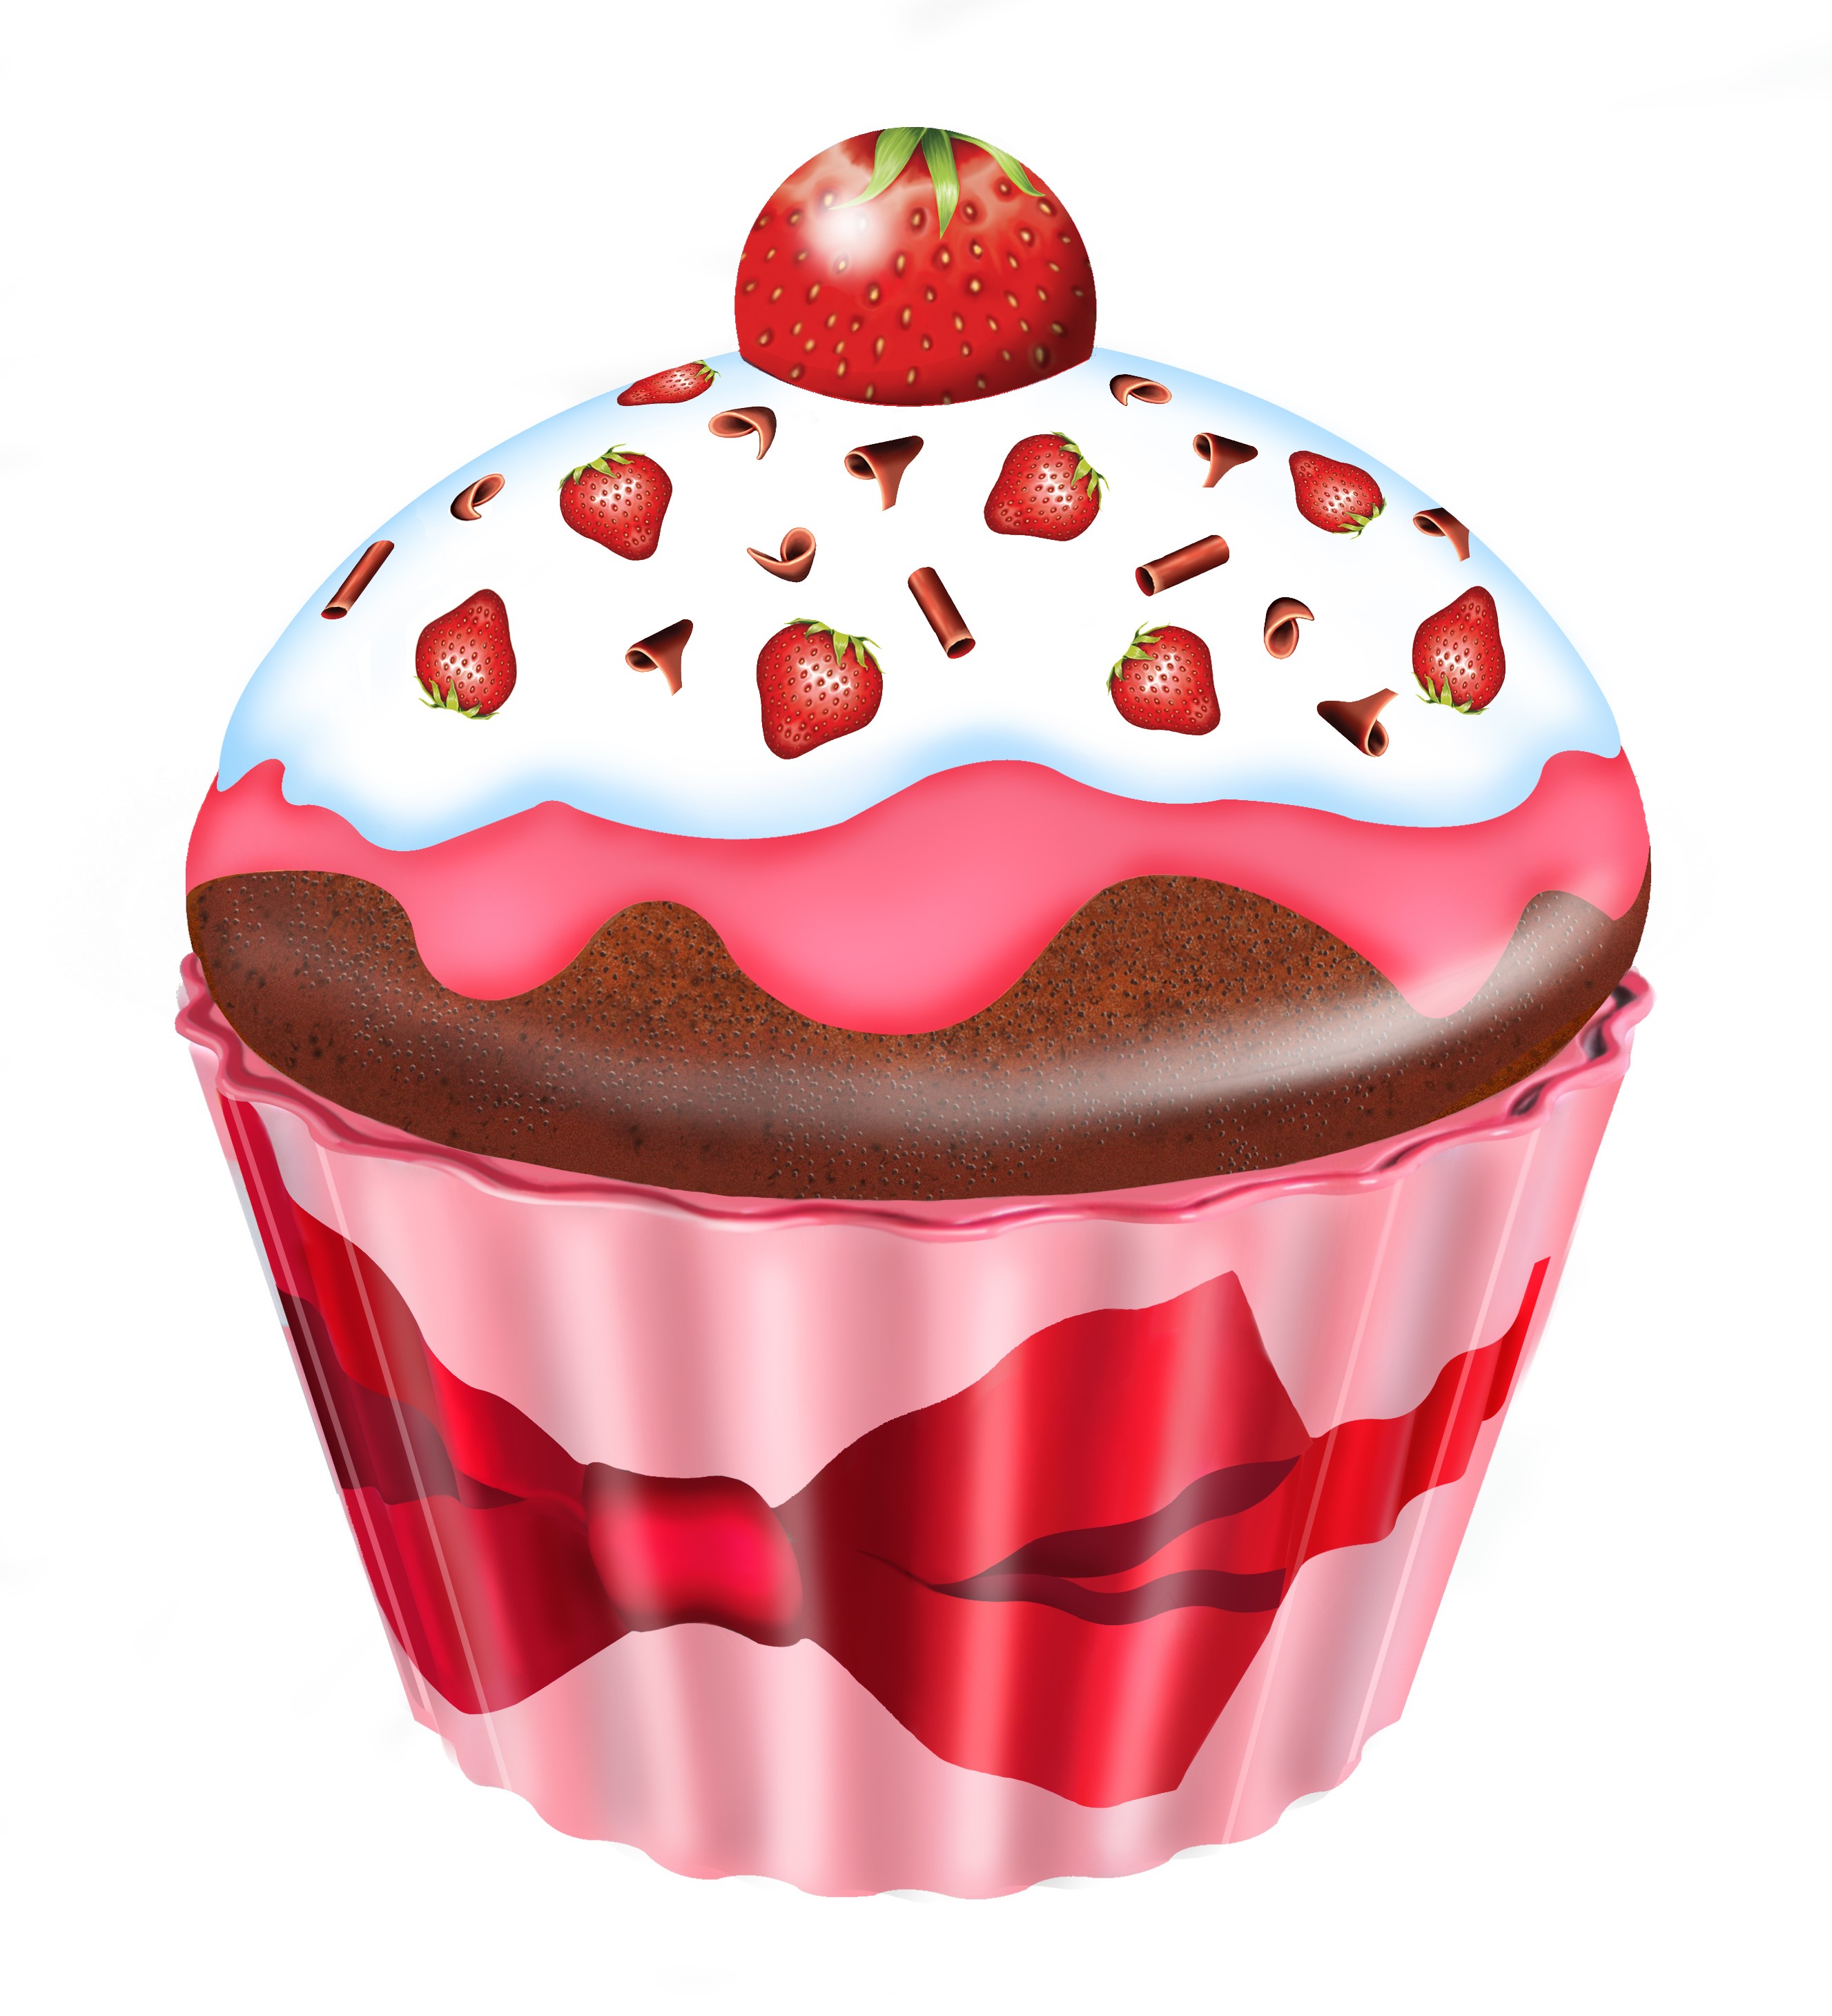 Cupcake groß Erdbeeren